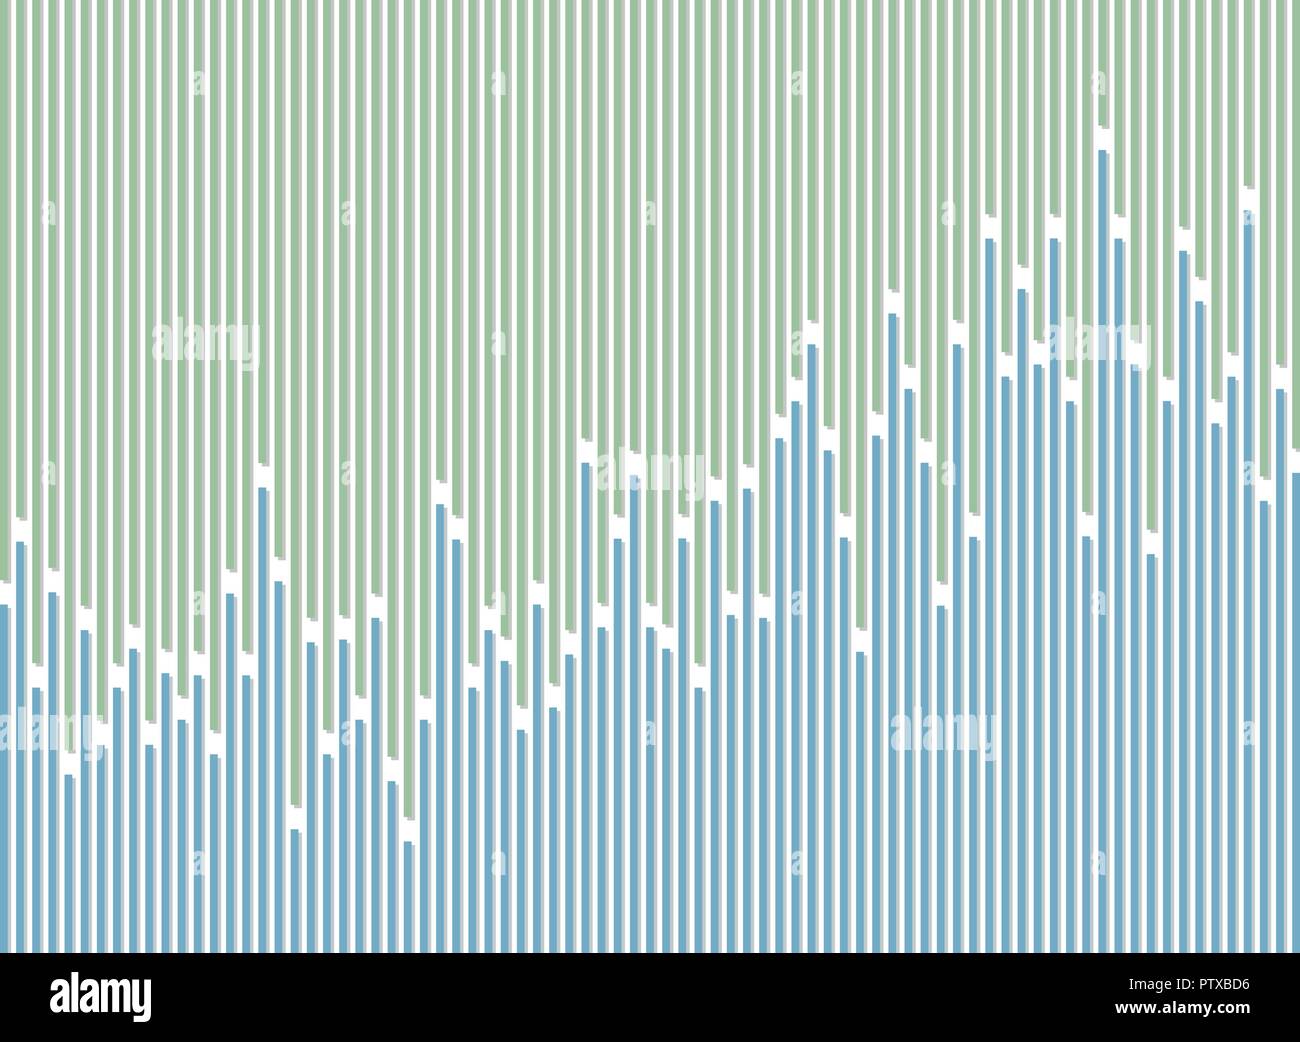 Résumé de la ligne stripe vert et bleu motif de fond, vector eps10 Illustration de Vecteur